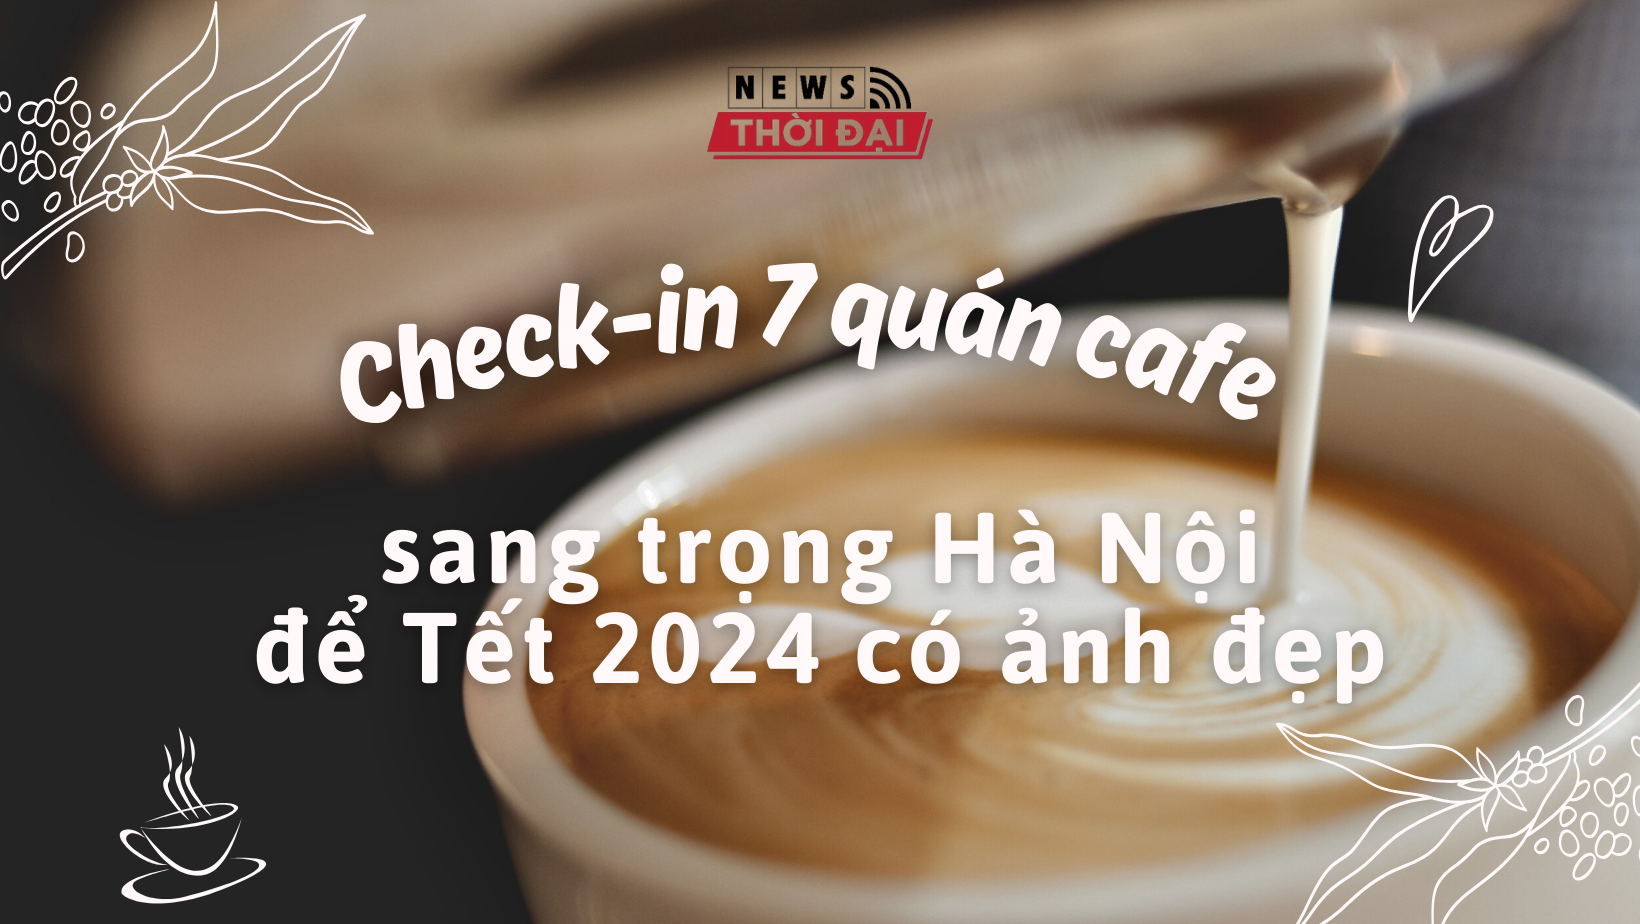 Check-in 7 quán cafe sang trọng Hà Nội để Tết 2024 có ảnh đẹp